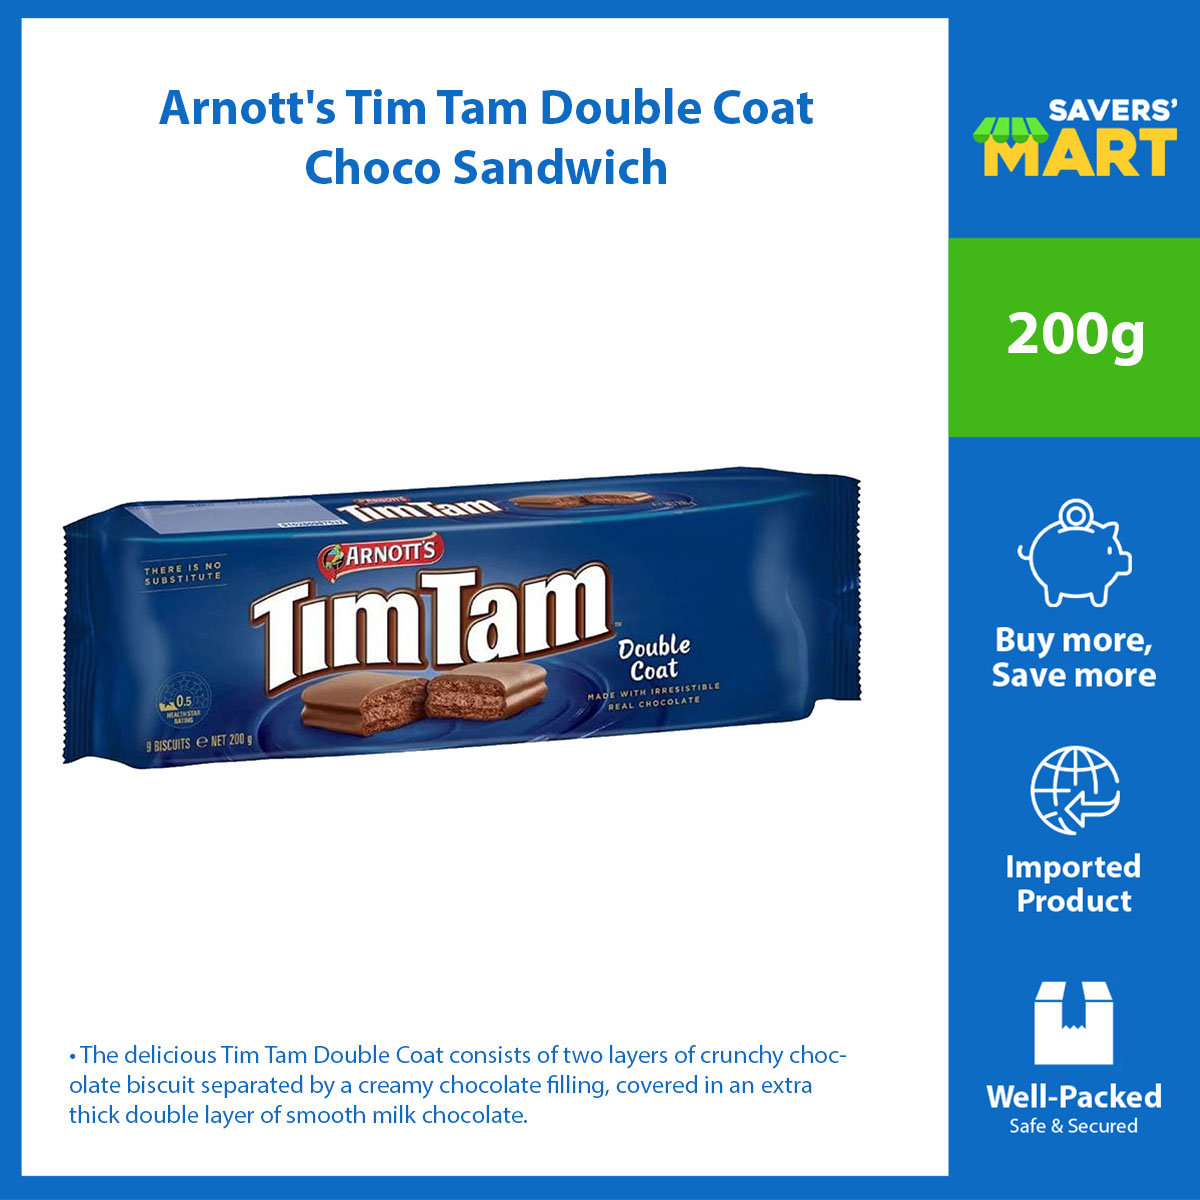 Arnott's Tim Tam Double Coat